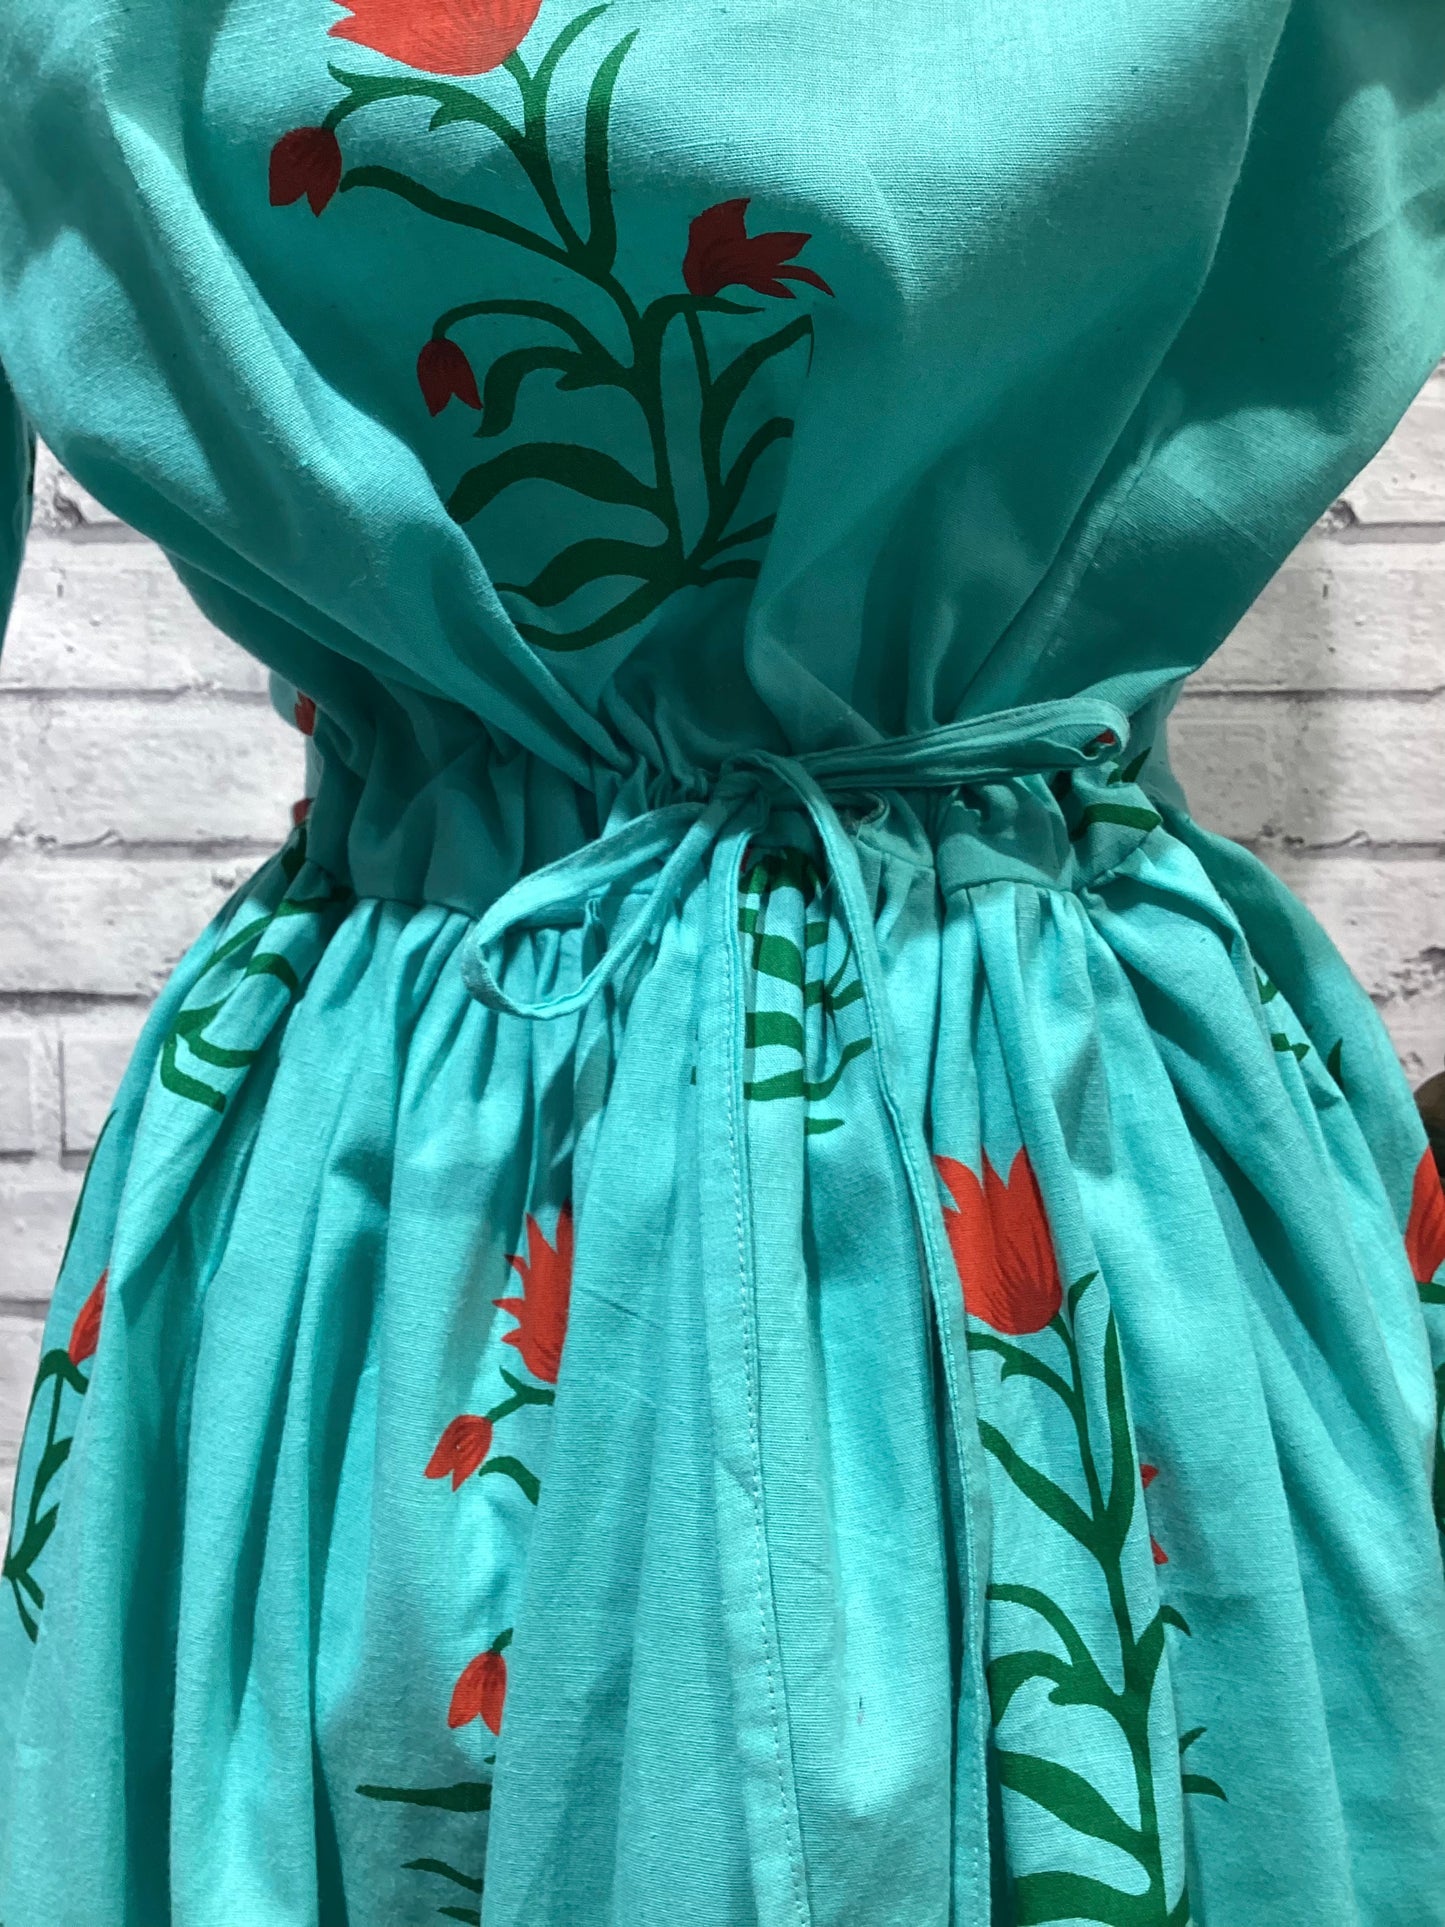 Drawstring Dress in Turquoise Floral Pattern - Violet Elizabeth